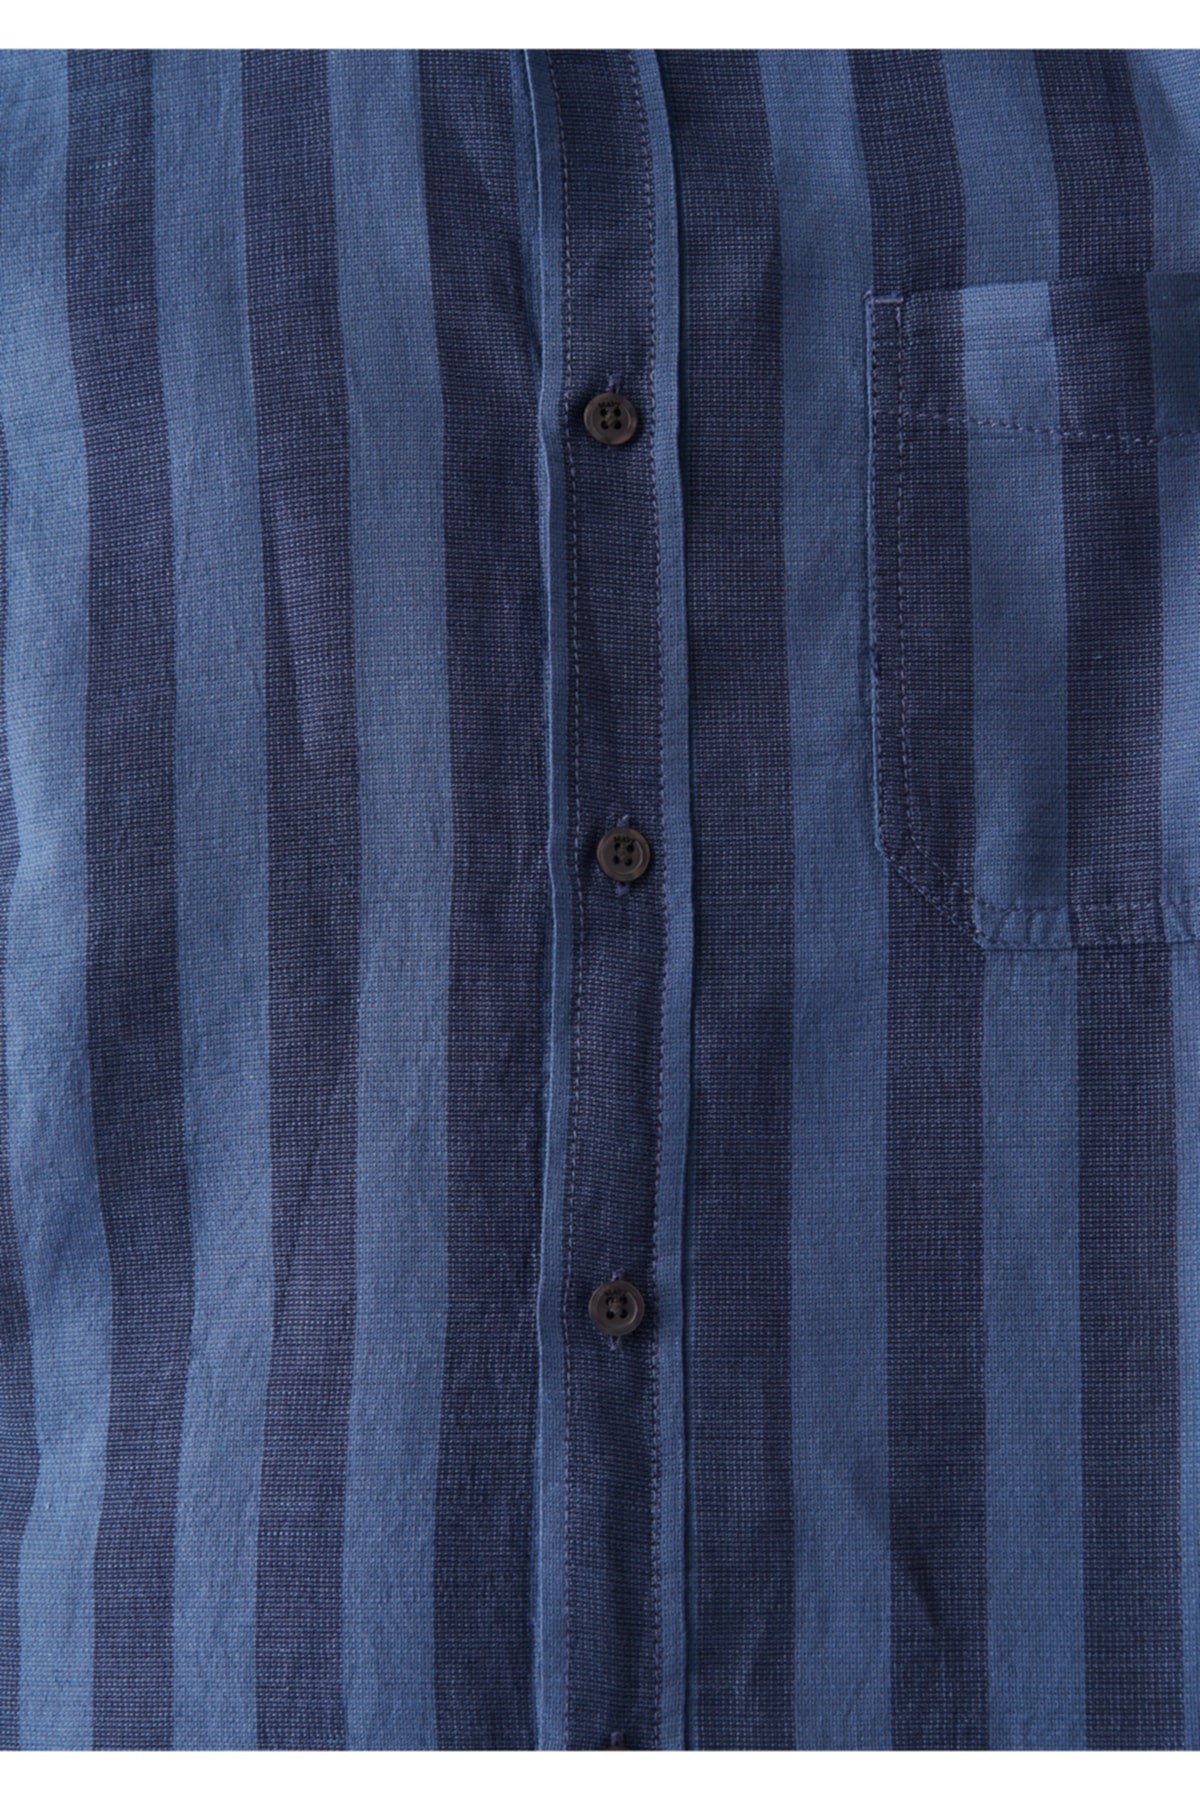 Mavi Jeans Erkek Gömlek 0210100-70490 